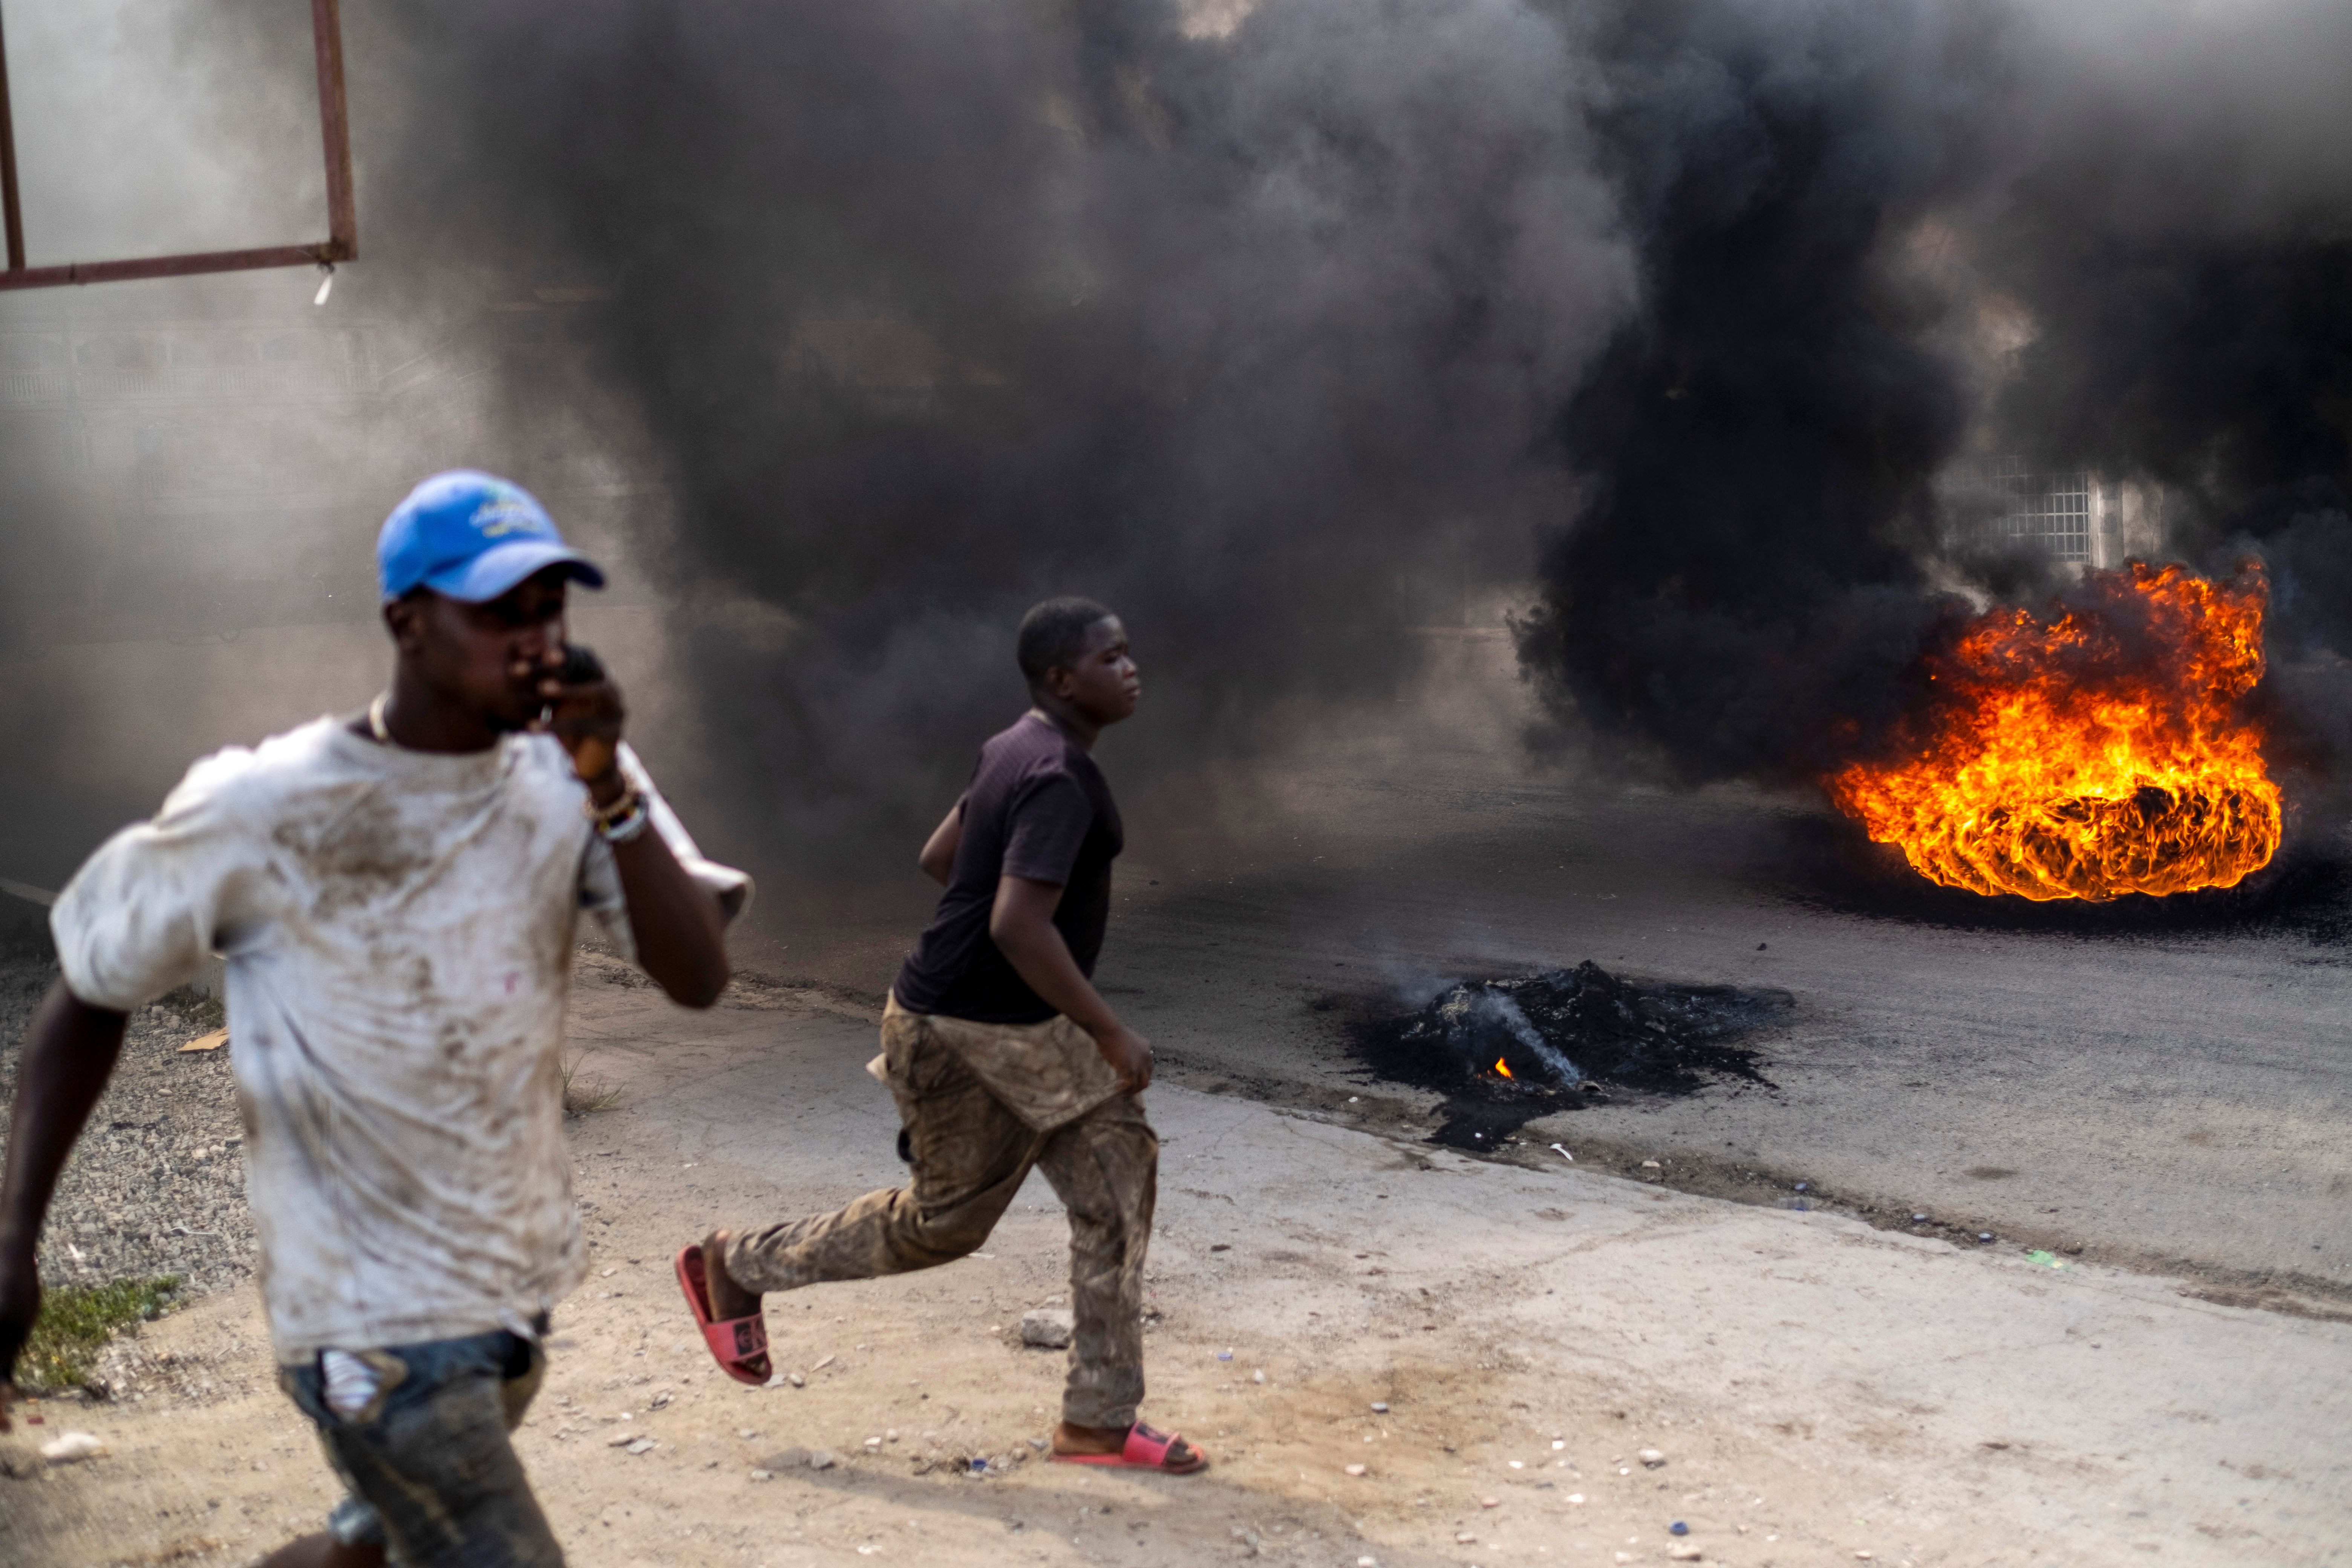 Manifestantes corren en una calle llena de humo de neumáticos quemados durante una protesta contra el asesinato del presidente Moise en Cap-Haitien, el 22 de julio de 2021 (REUTERS/Ricardo Arduengo)